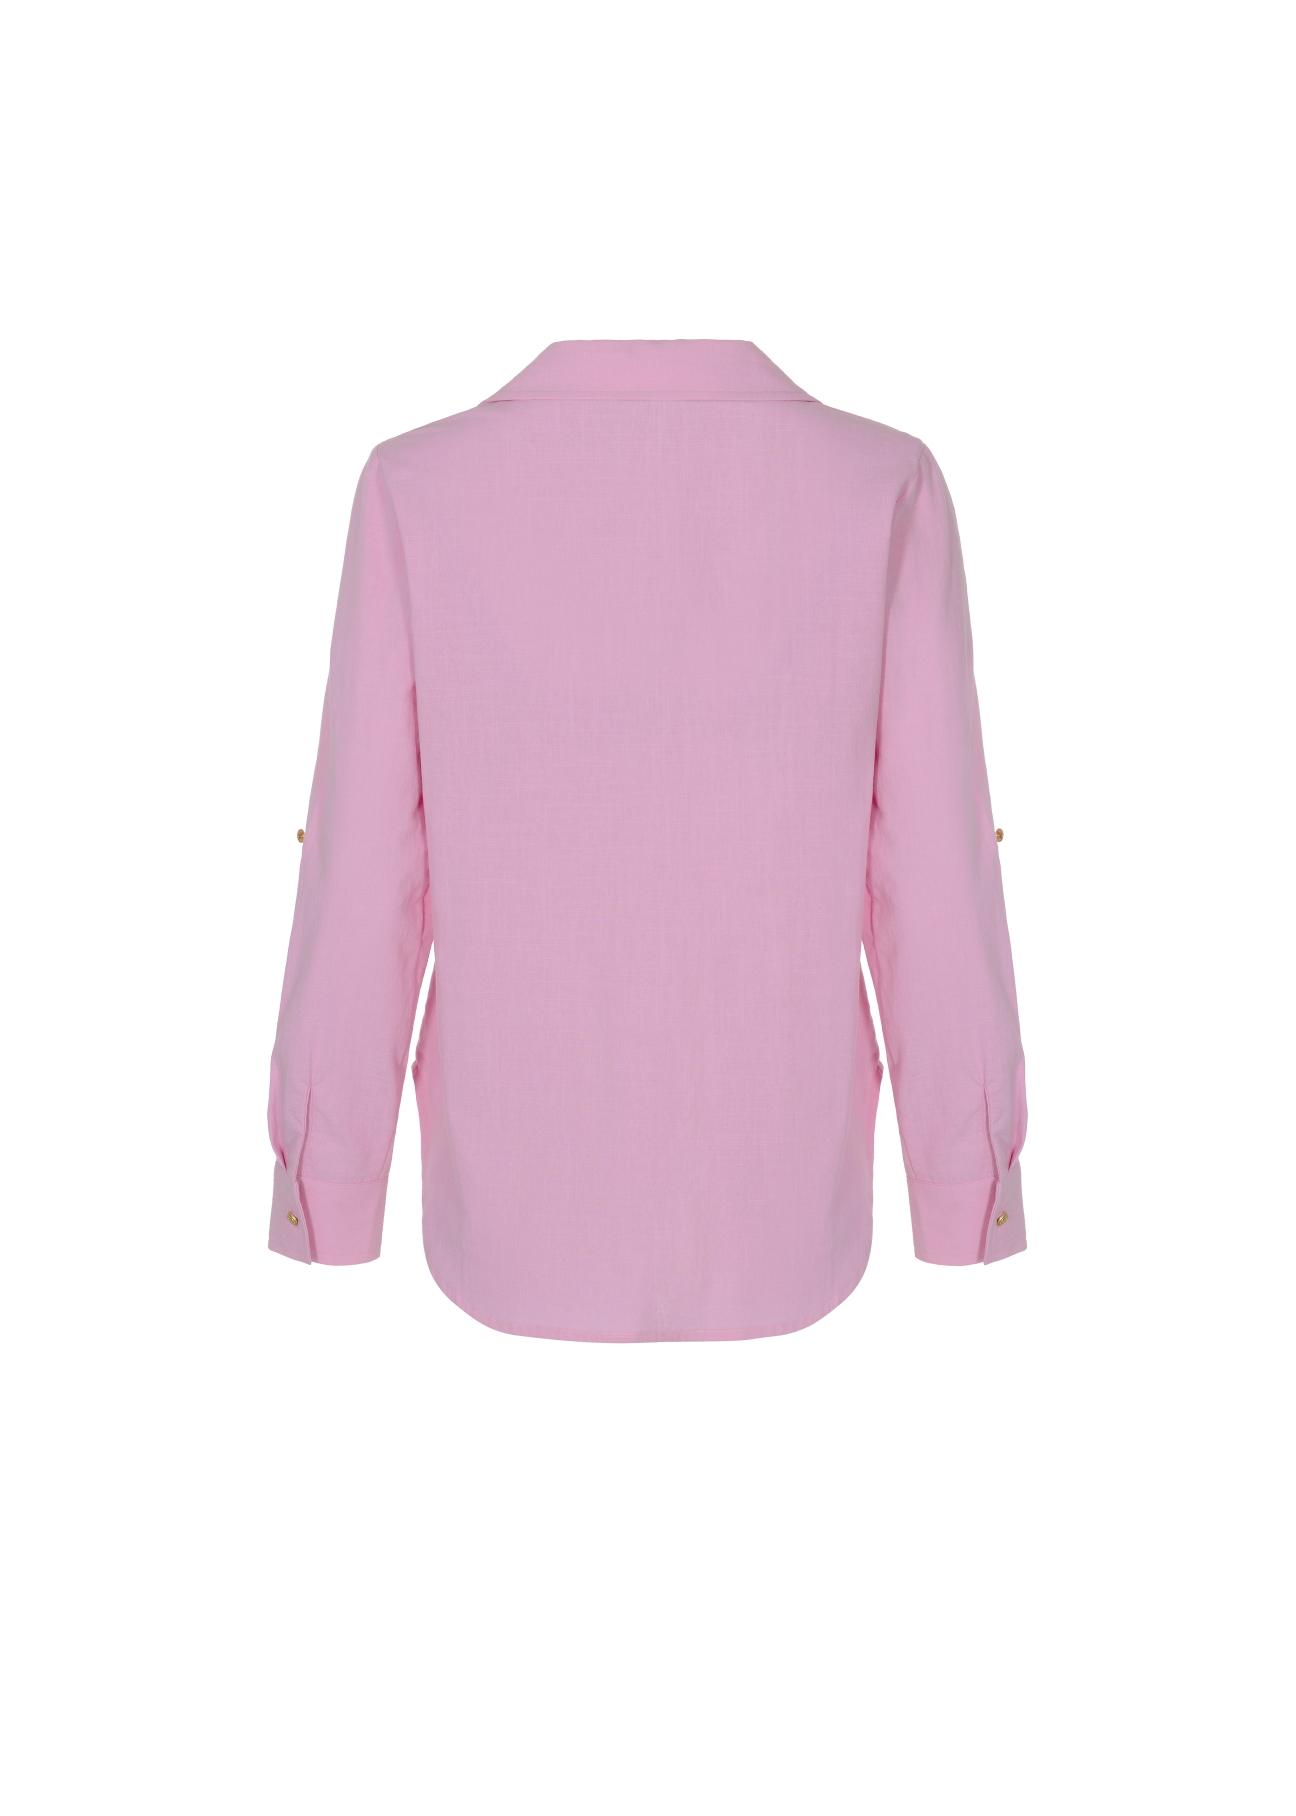 Różowa koszula bawełniana damska KOSDT-0092-34(W22)